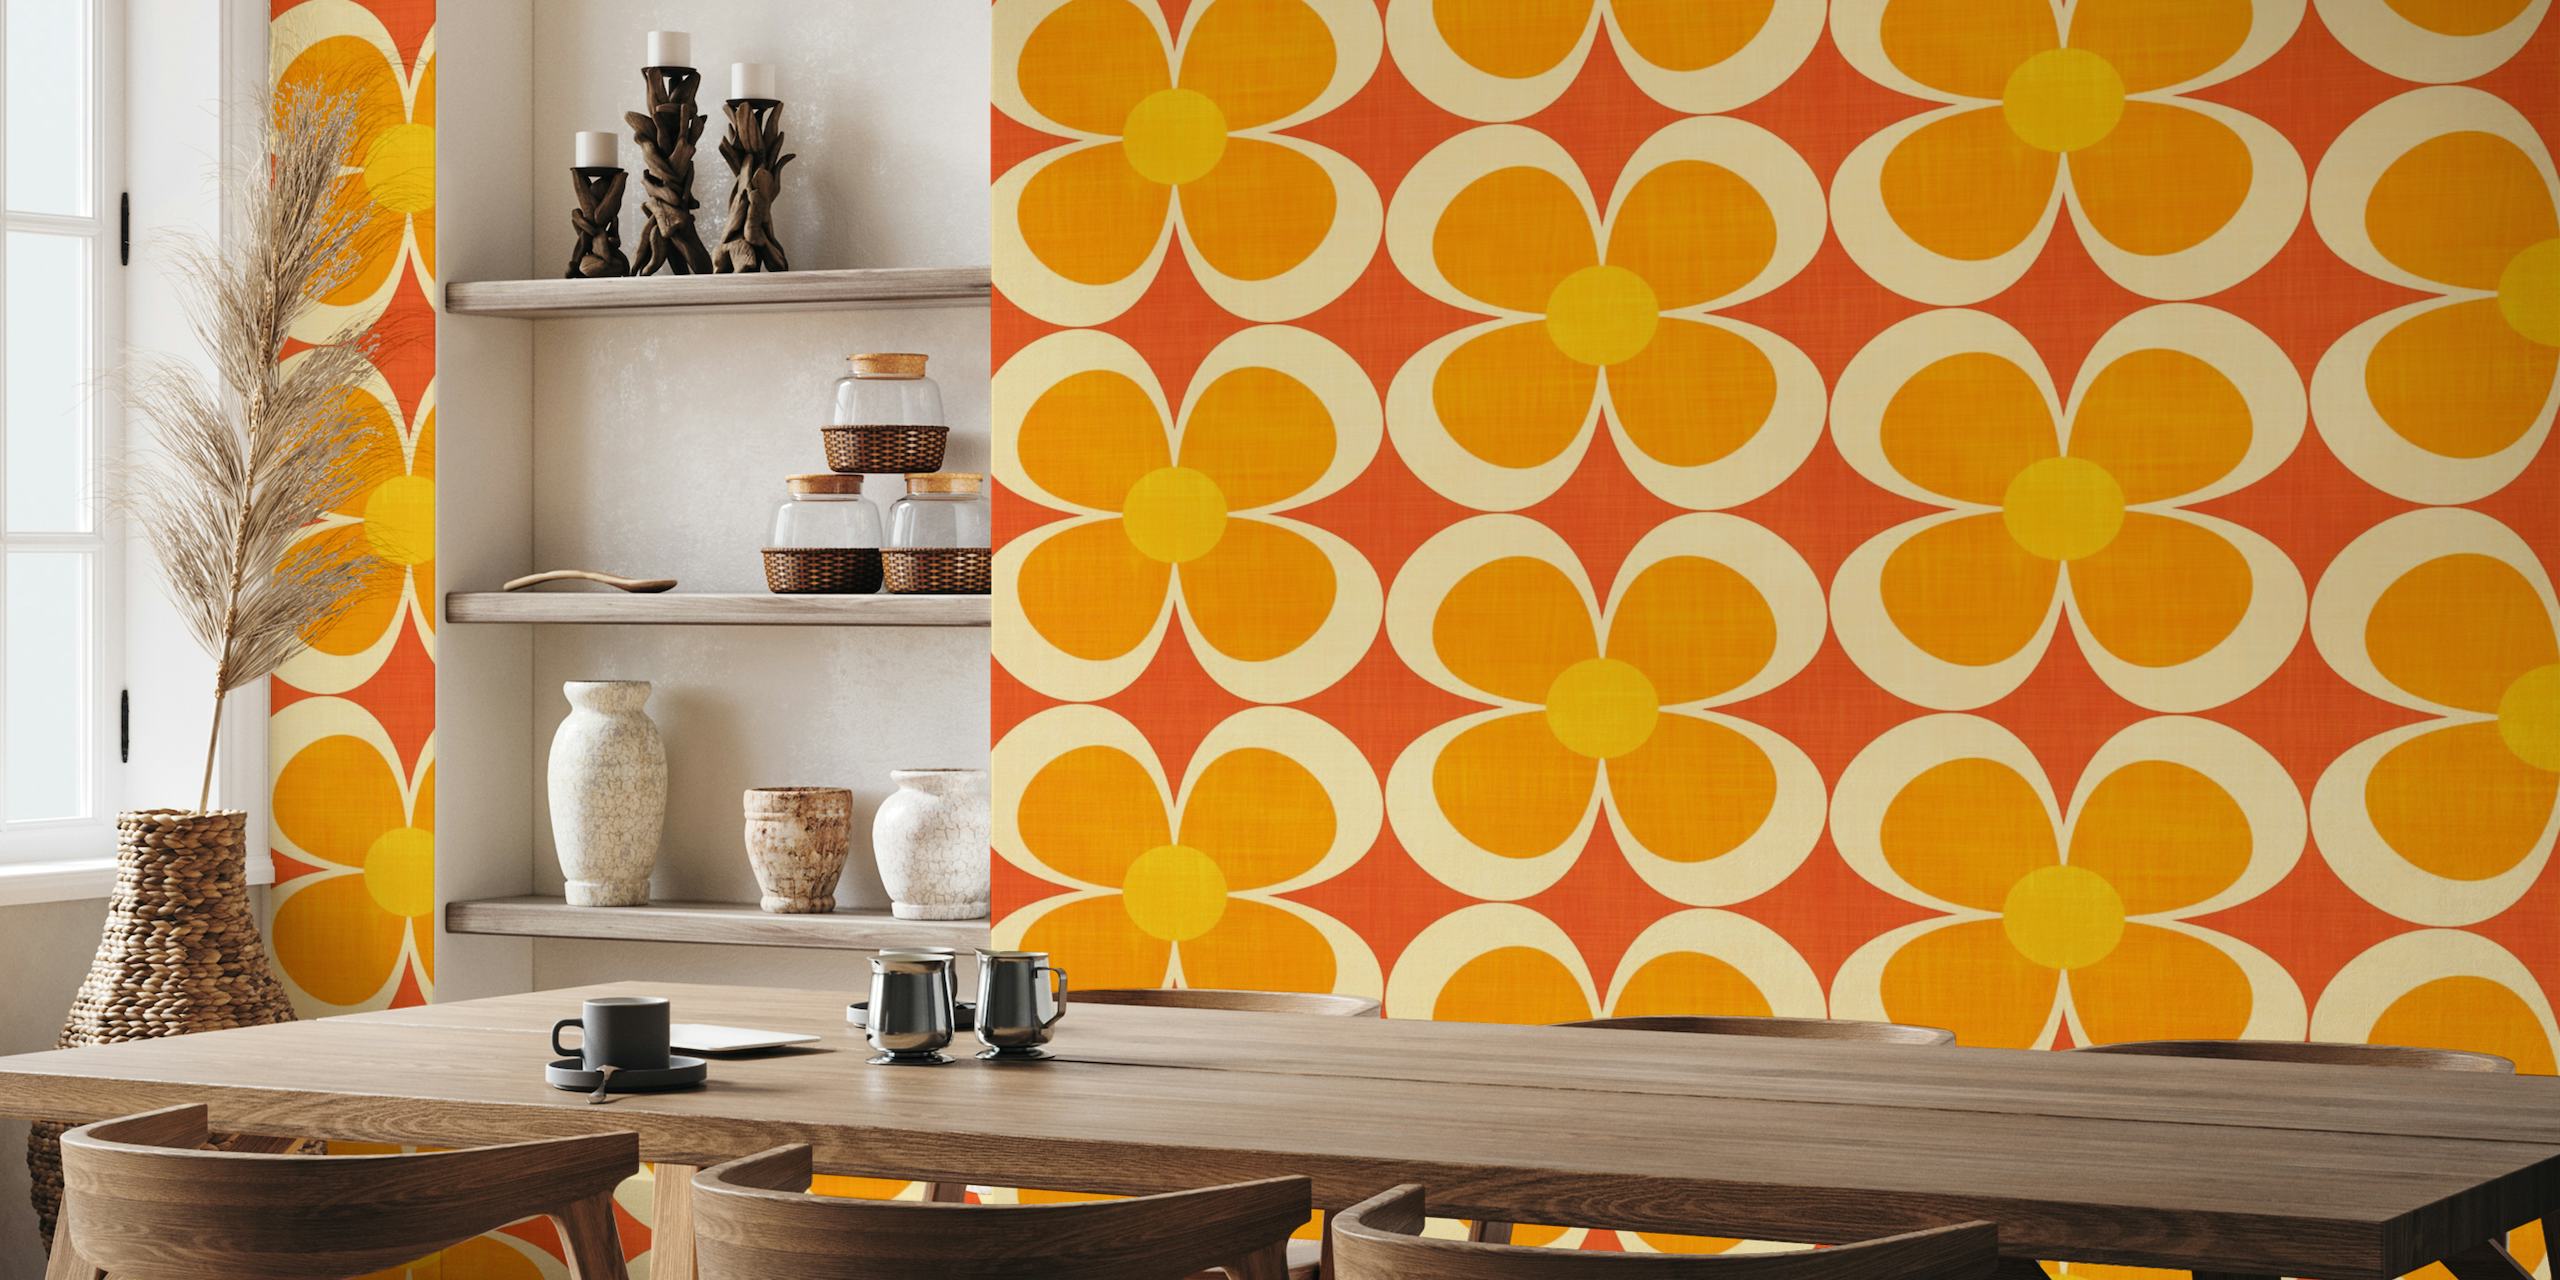 Retro inspiriran Groovy Geometric Floral zidni mural u narančastoj, žutoj i crvenoj boji